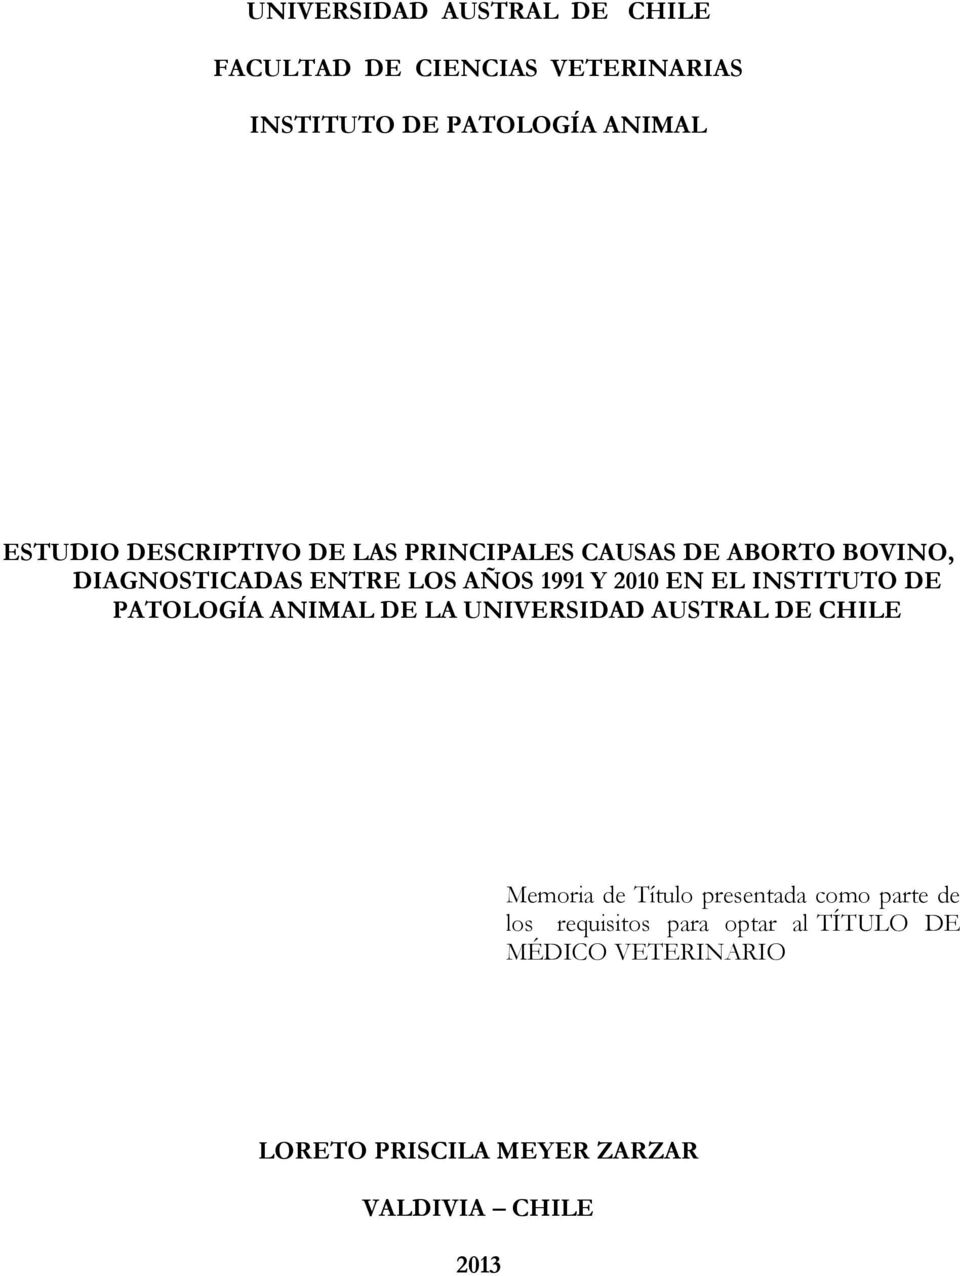 INSTITUTO DE PATOLOGÍA ANIMAL DE LA UNIVERSIDAD AUSTRAL DE CHILE Memoria de Título presentada como